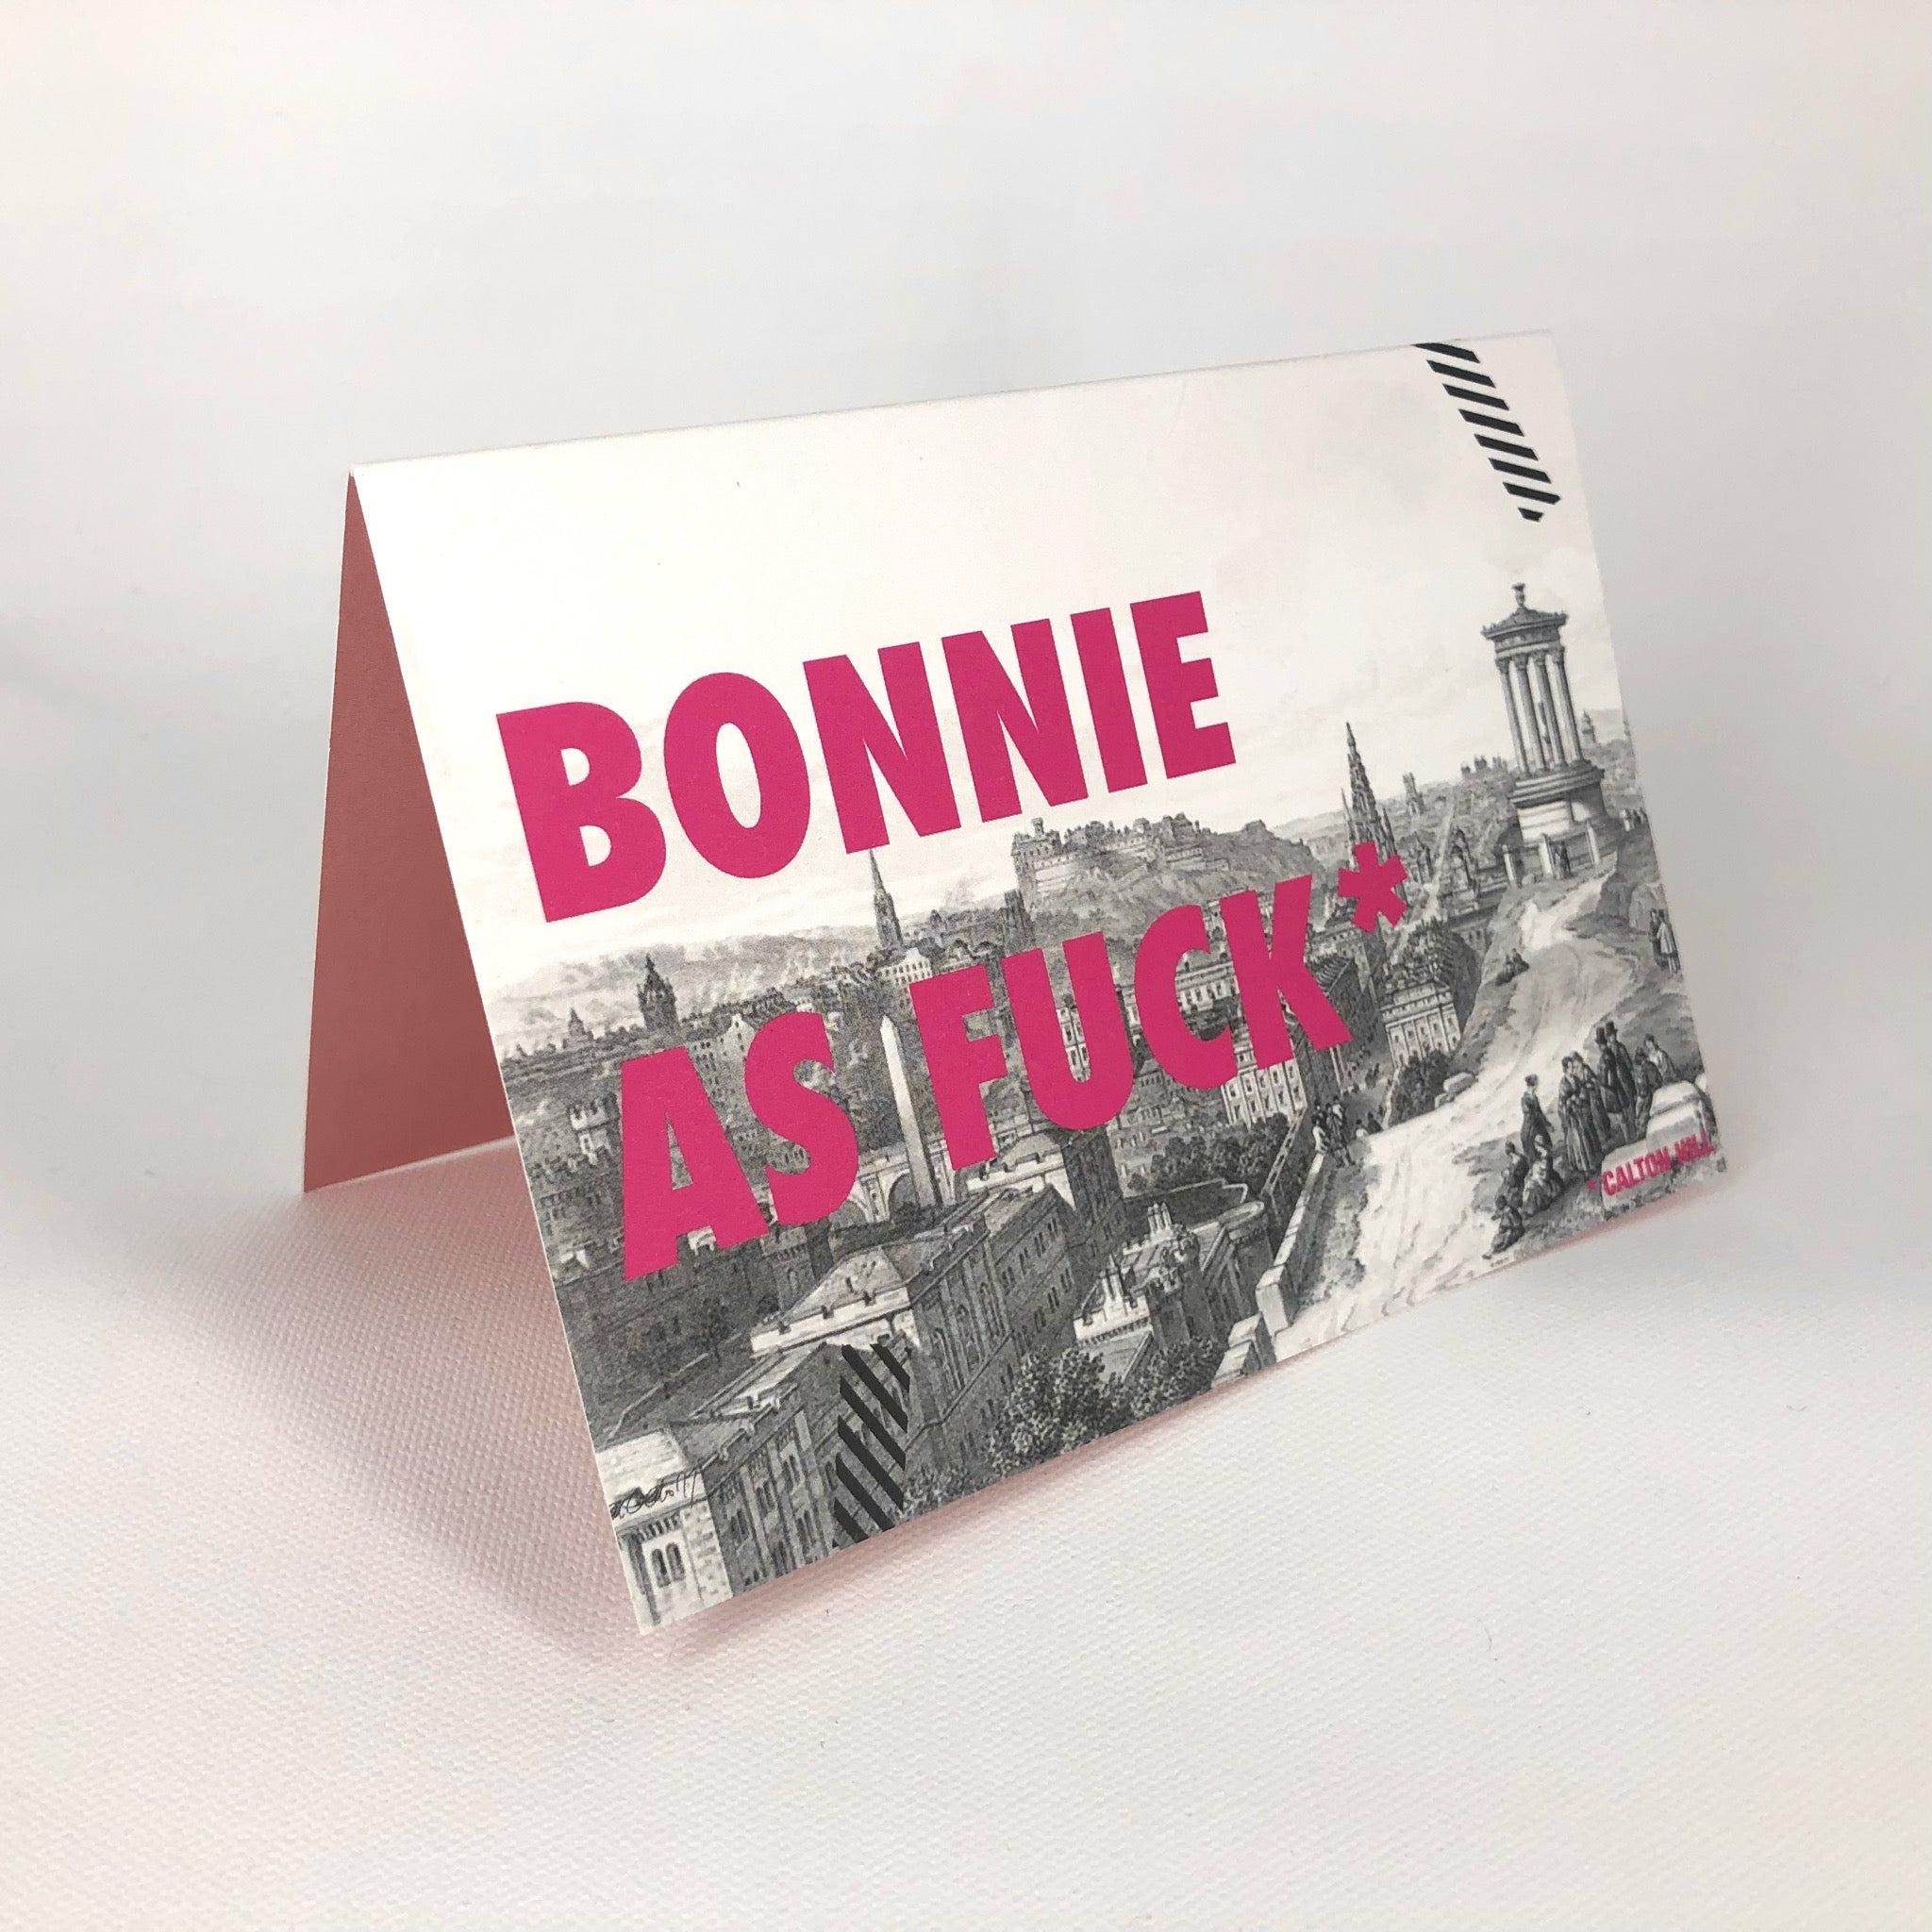 Bonnie Calton Hill Greeting Card